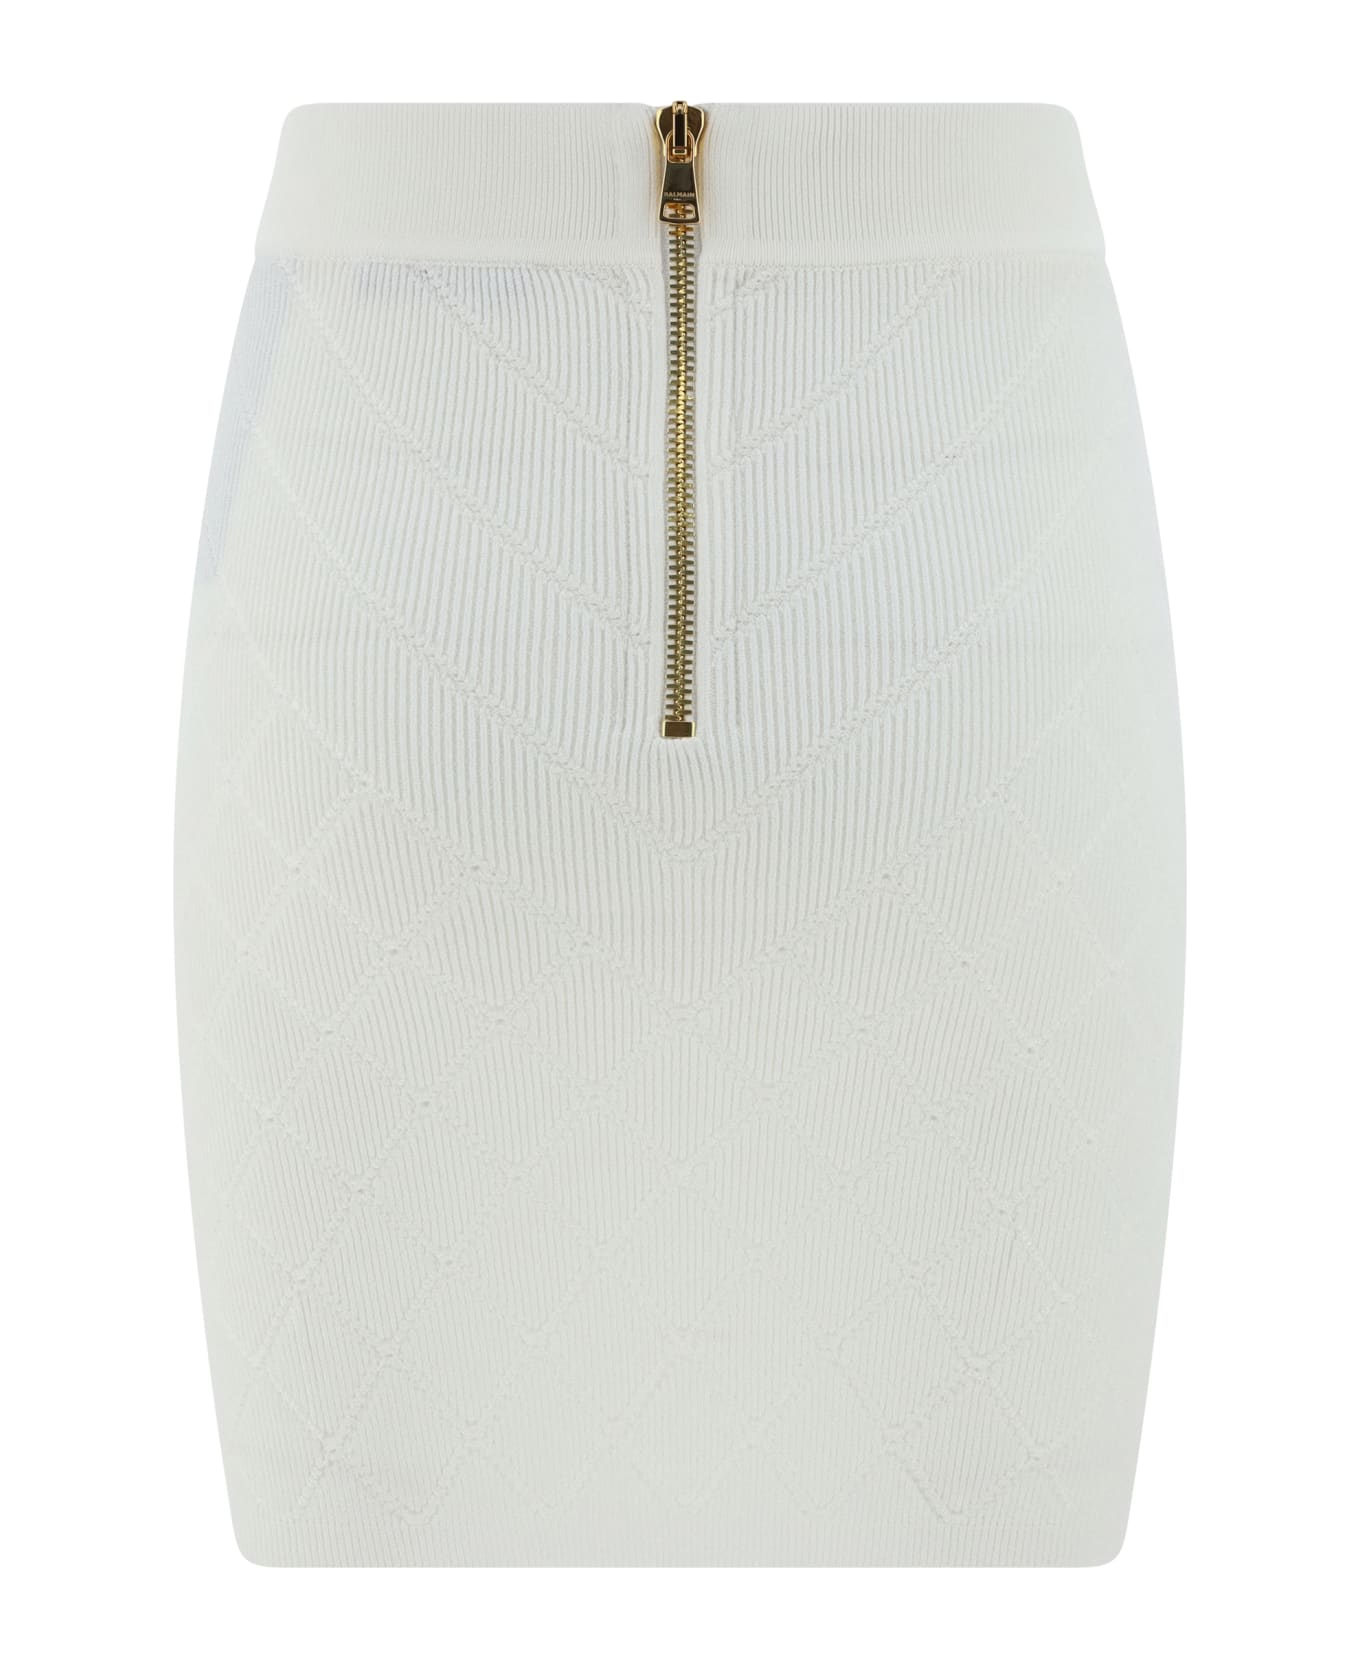 Balmain 6-button Knit Skirt - 0fa Blanc